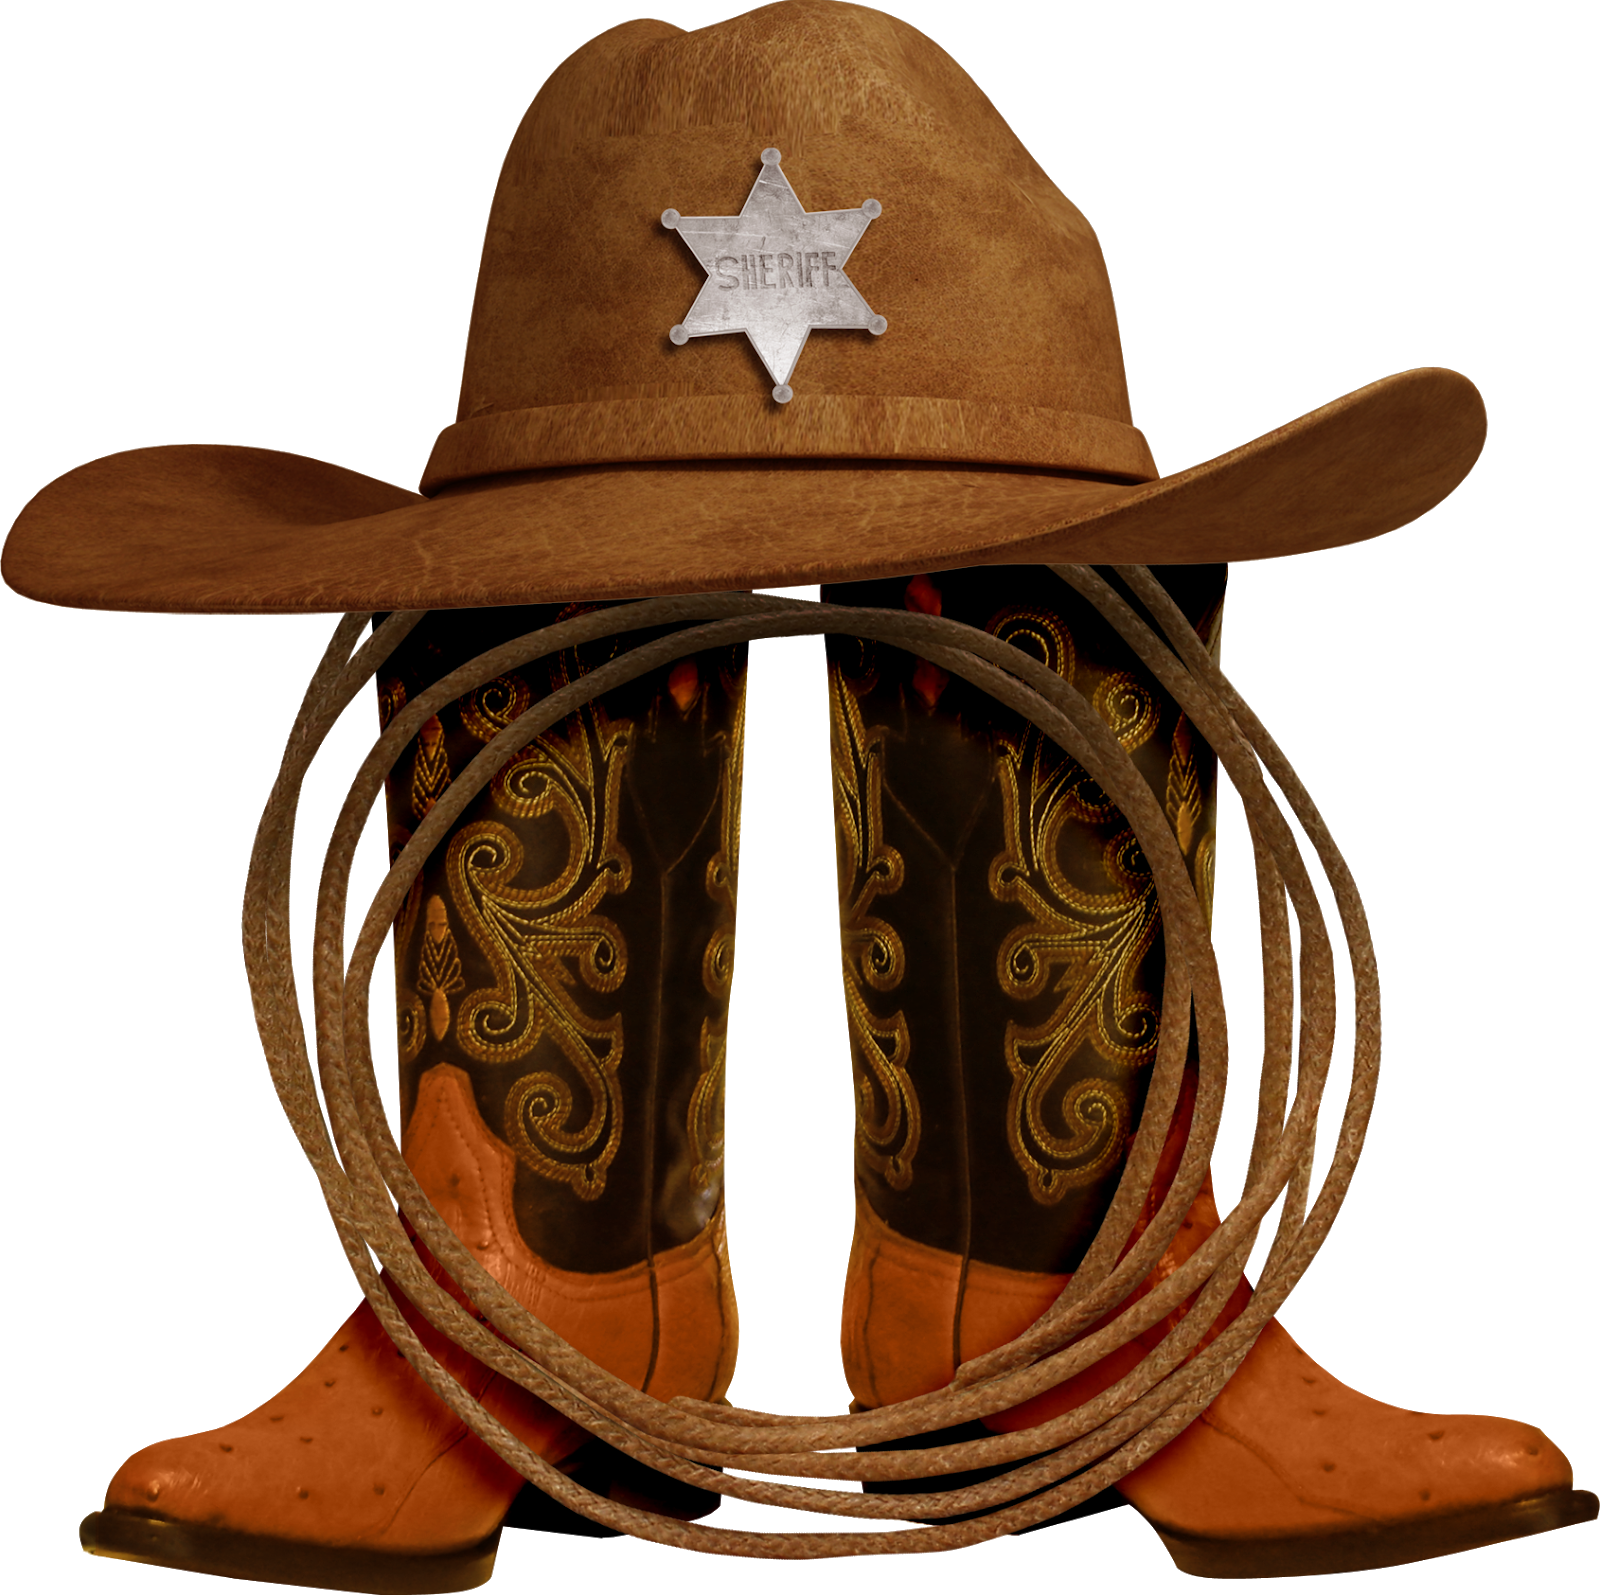 Ковбойские сапоги Шерифф. Шляпа дикий Запад. Ковбойская шляпа. Атрибуты для ковбойской вечеринки. Набор ковбоя